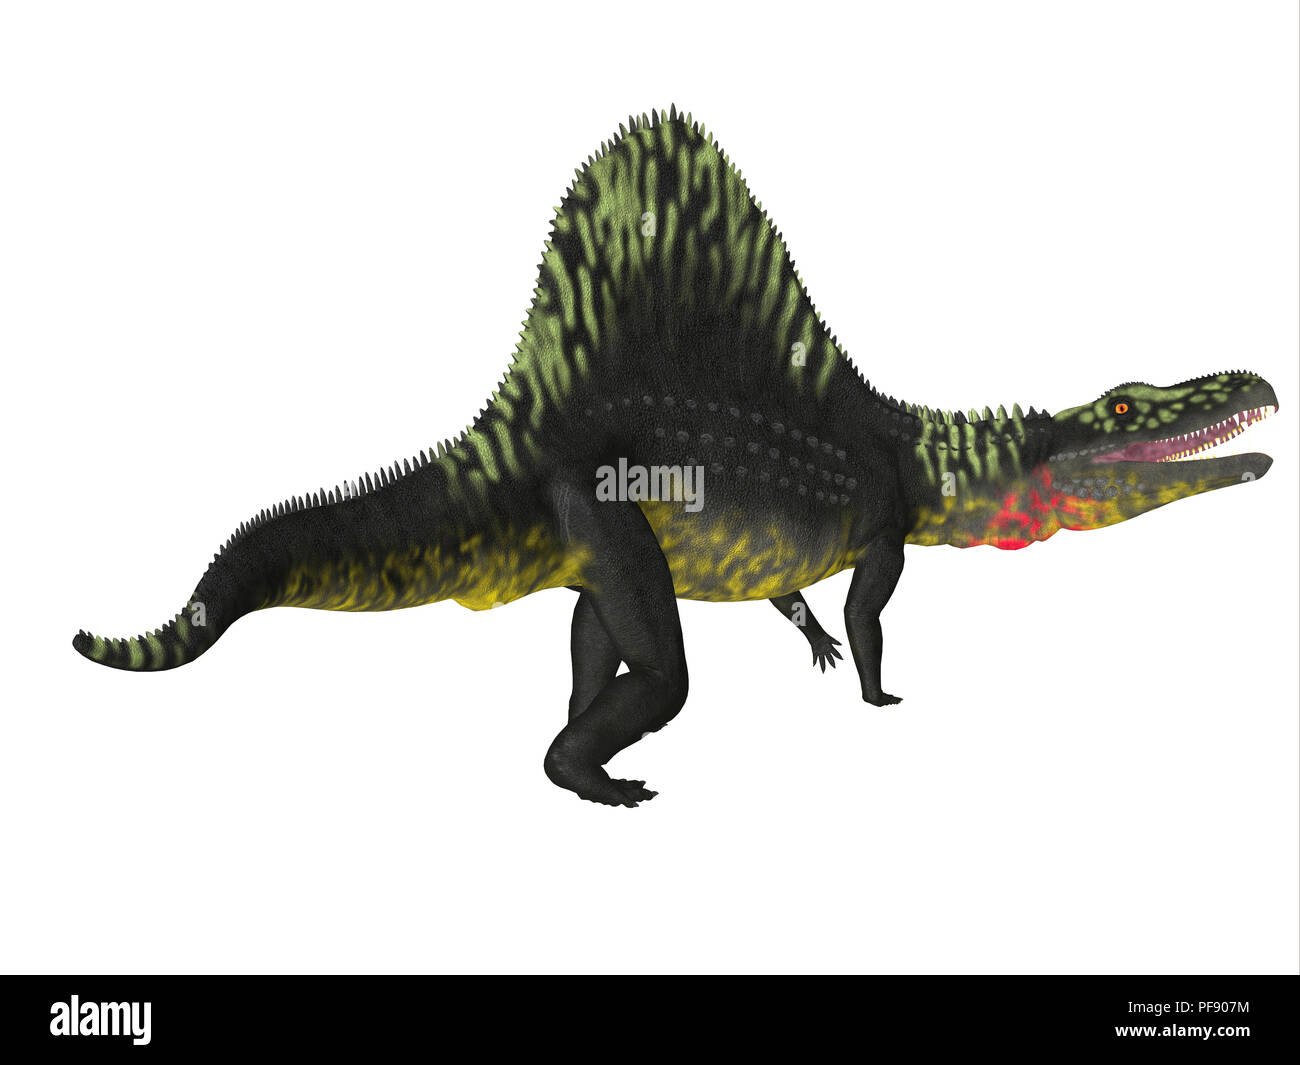 Arizonasaurus Dinosaurier - Arizonasaurus war eine fleischfressende Theropode Saurier, die in Arizona während der Trias lebte. Stockfoto